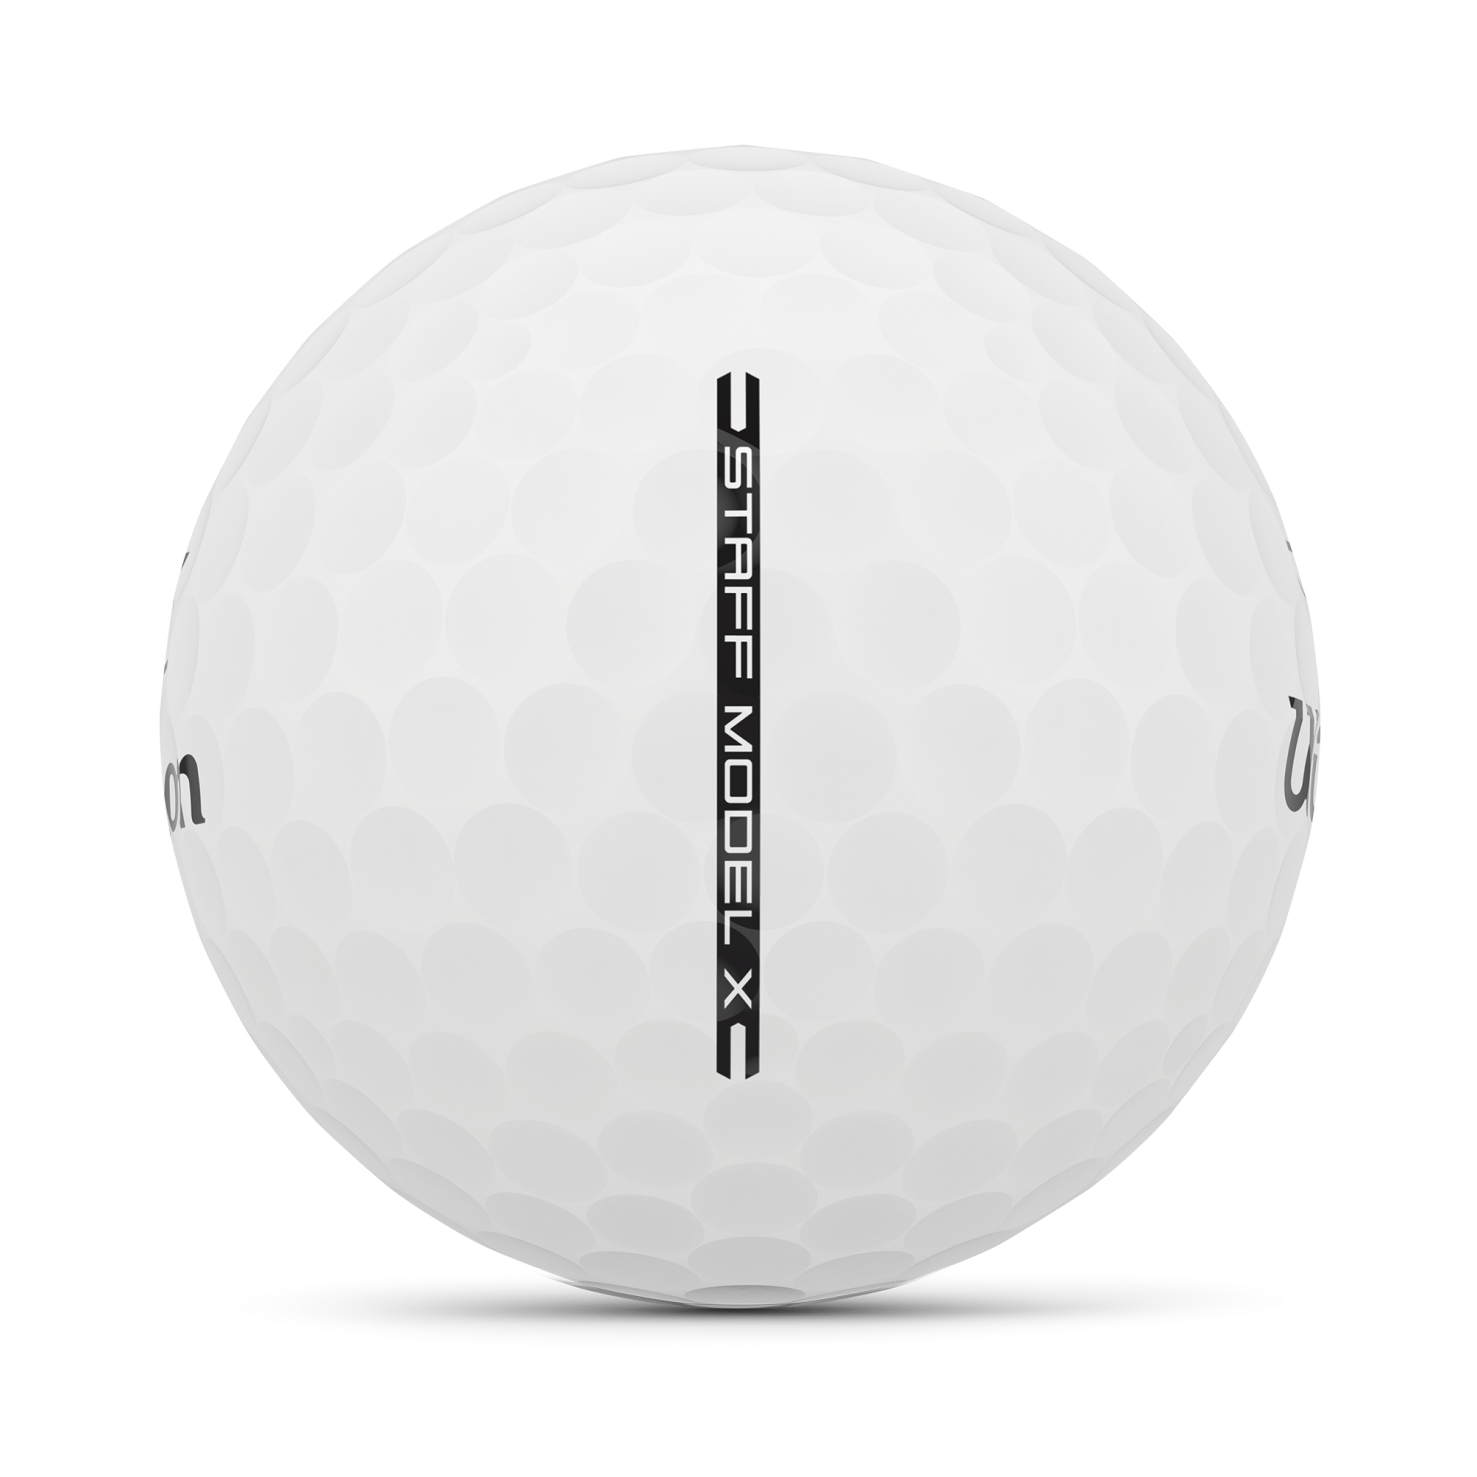 Staff Model X 2024 Golf Balls